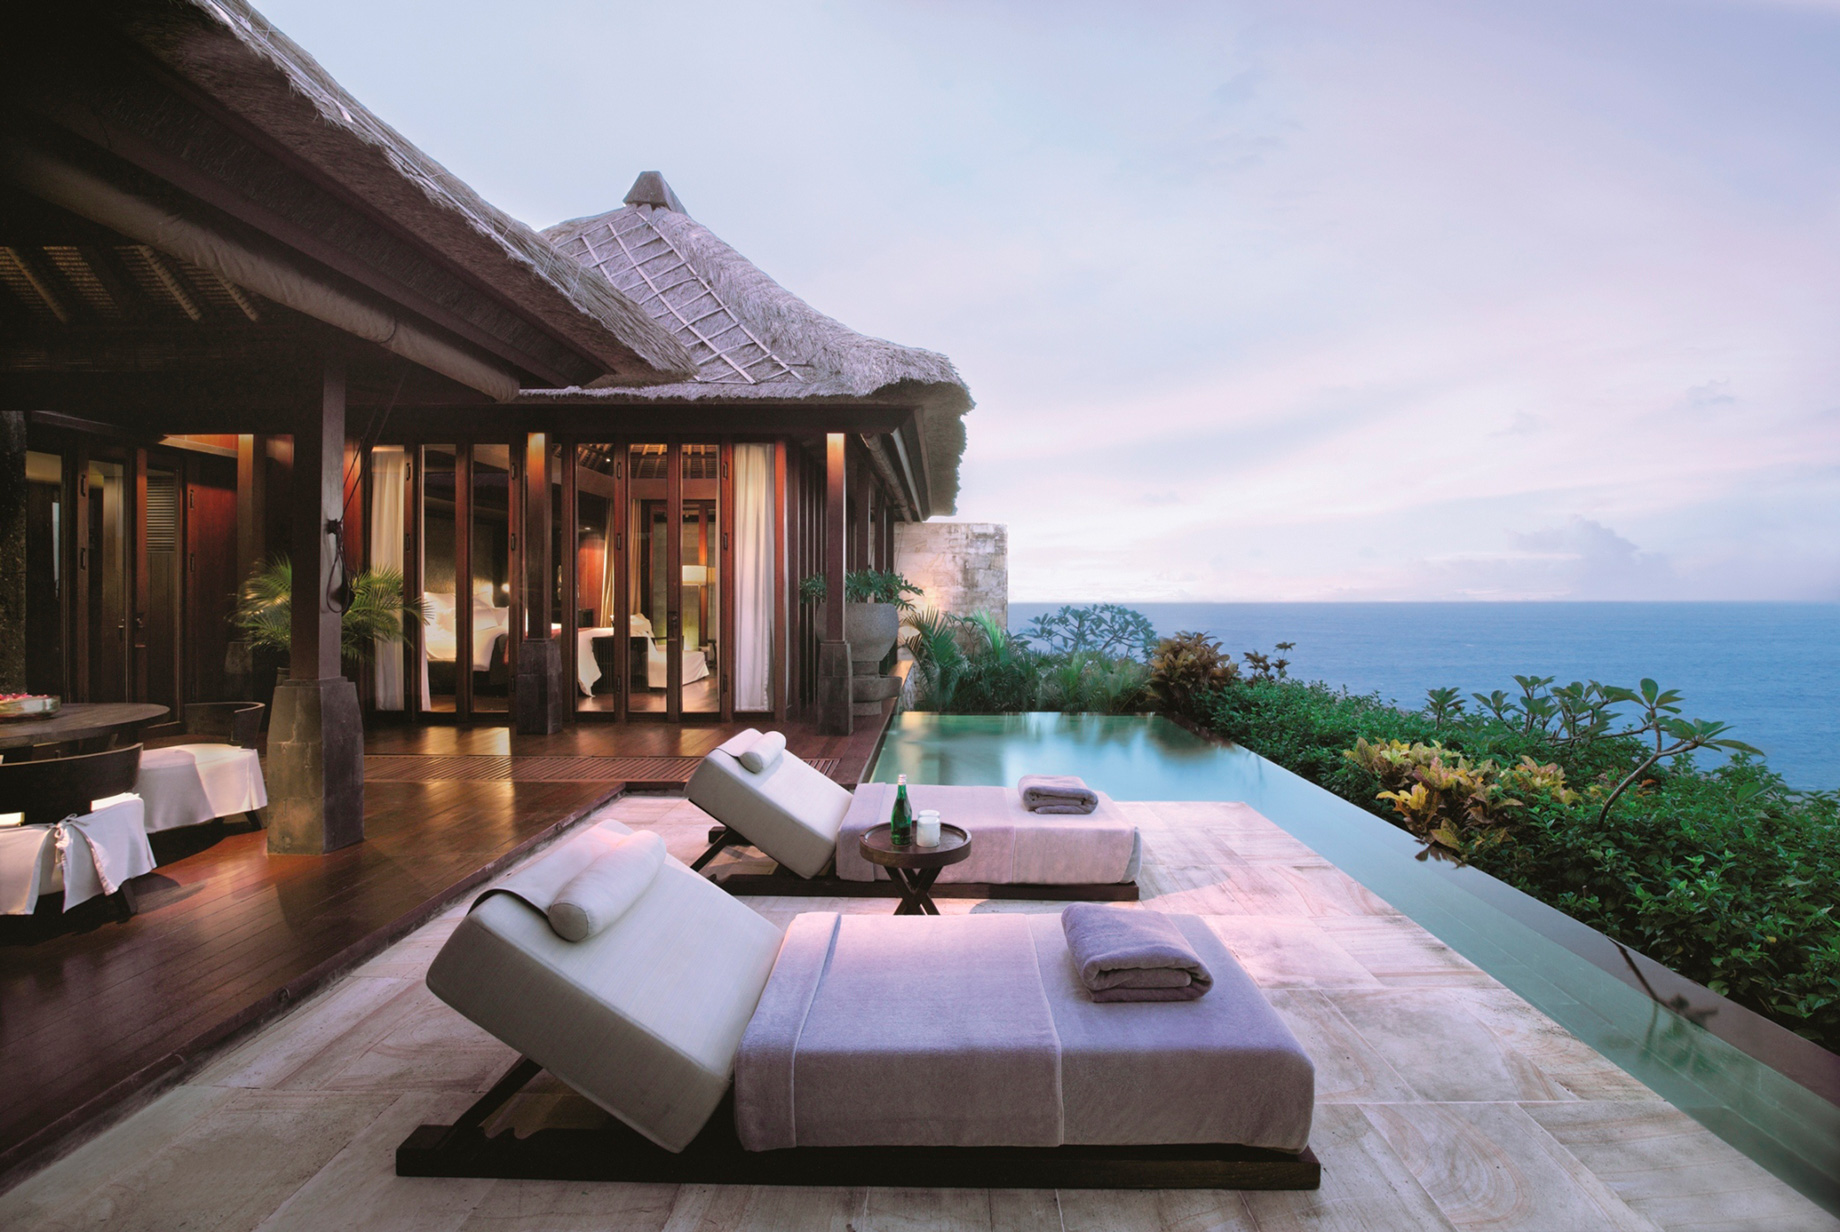 Bvlgari Resort Bali – Uluwatu, Bali, Indonesia – Ocean Cliff Villa Pool Deck Ocean View Dusk